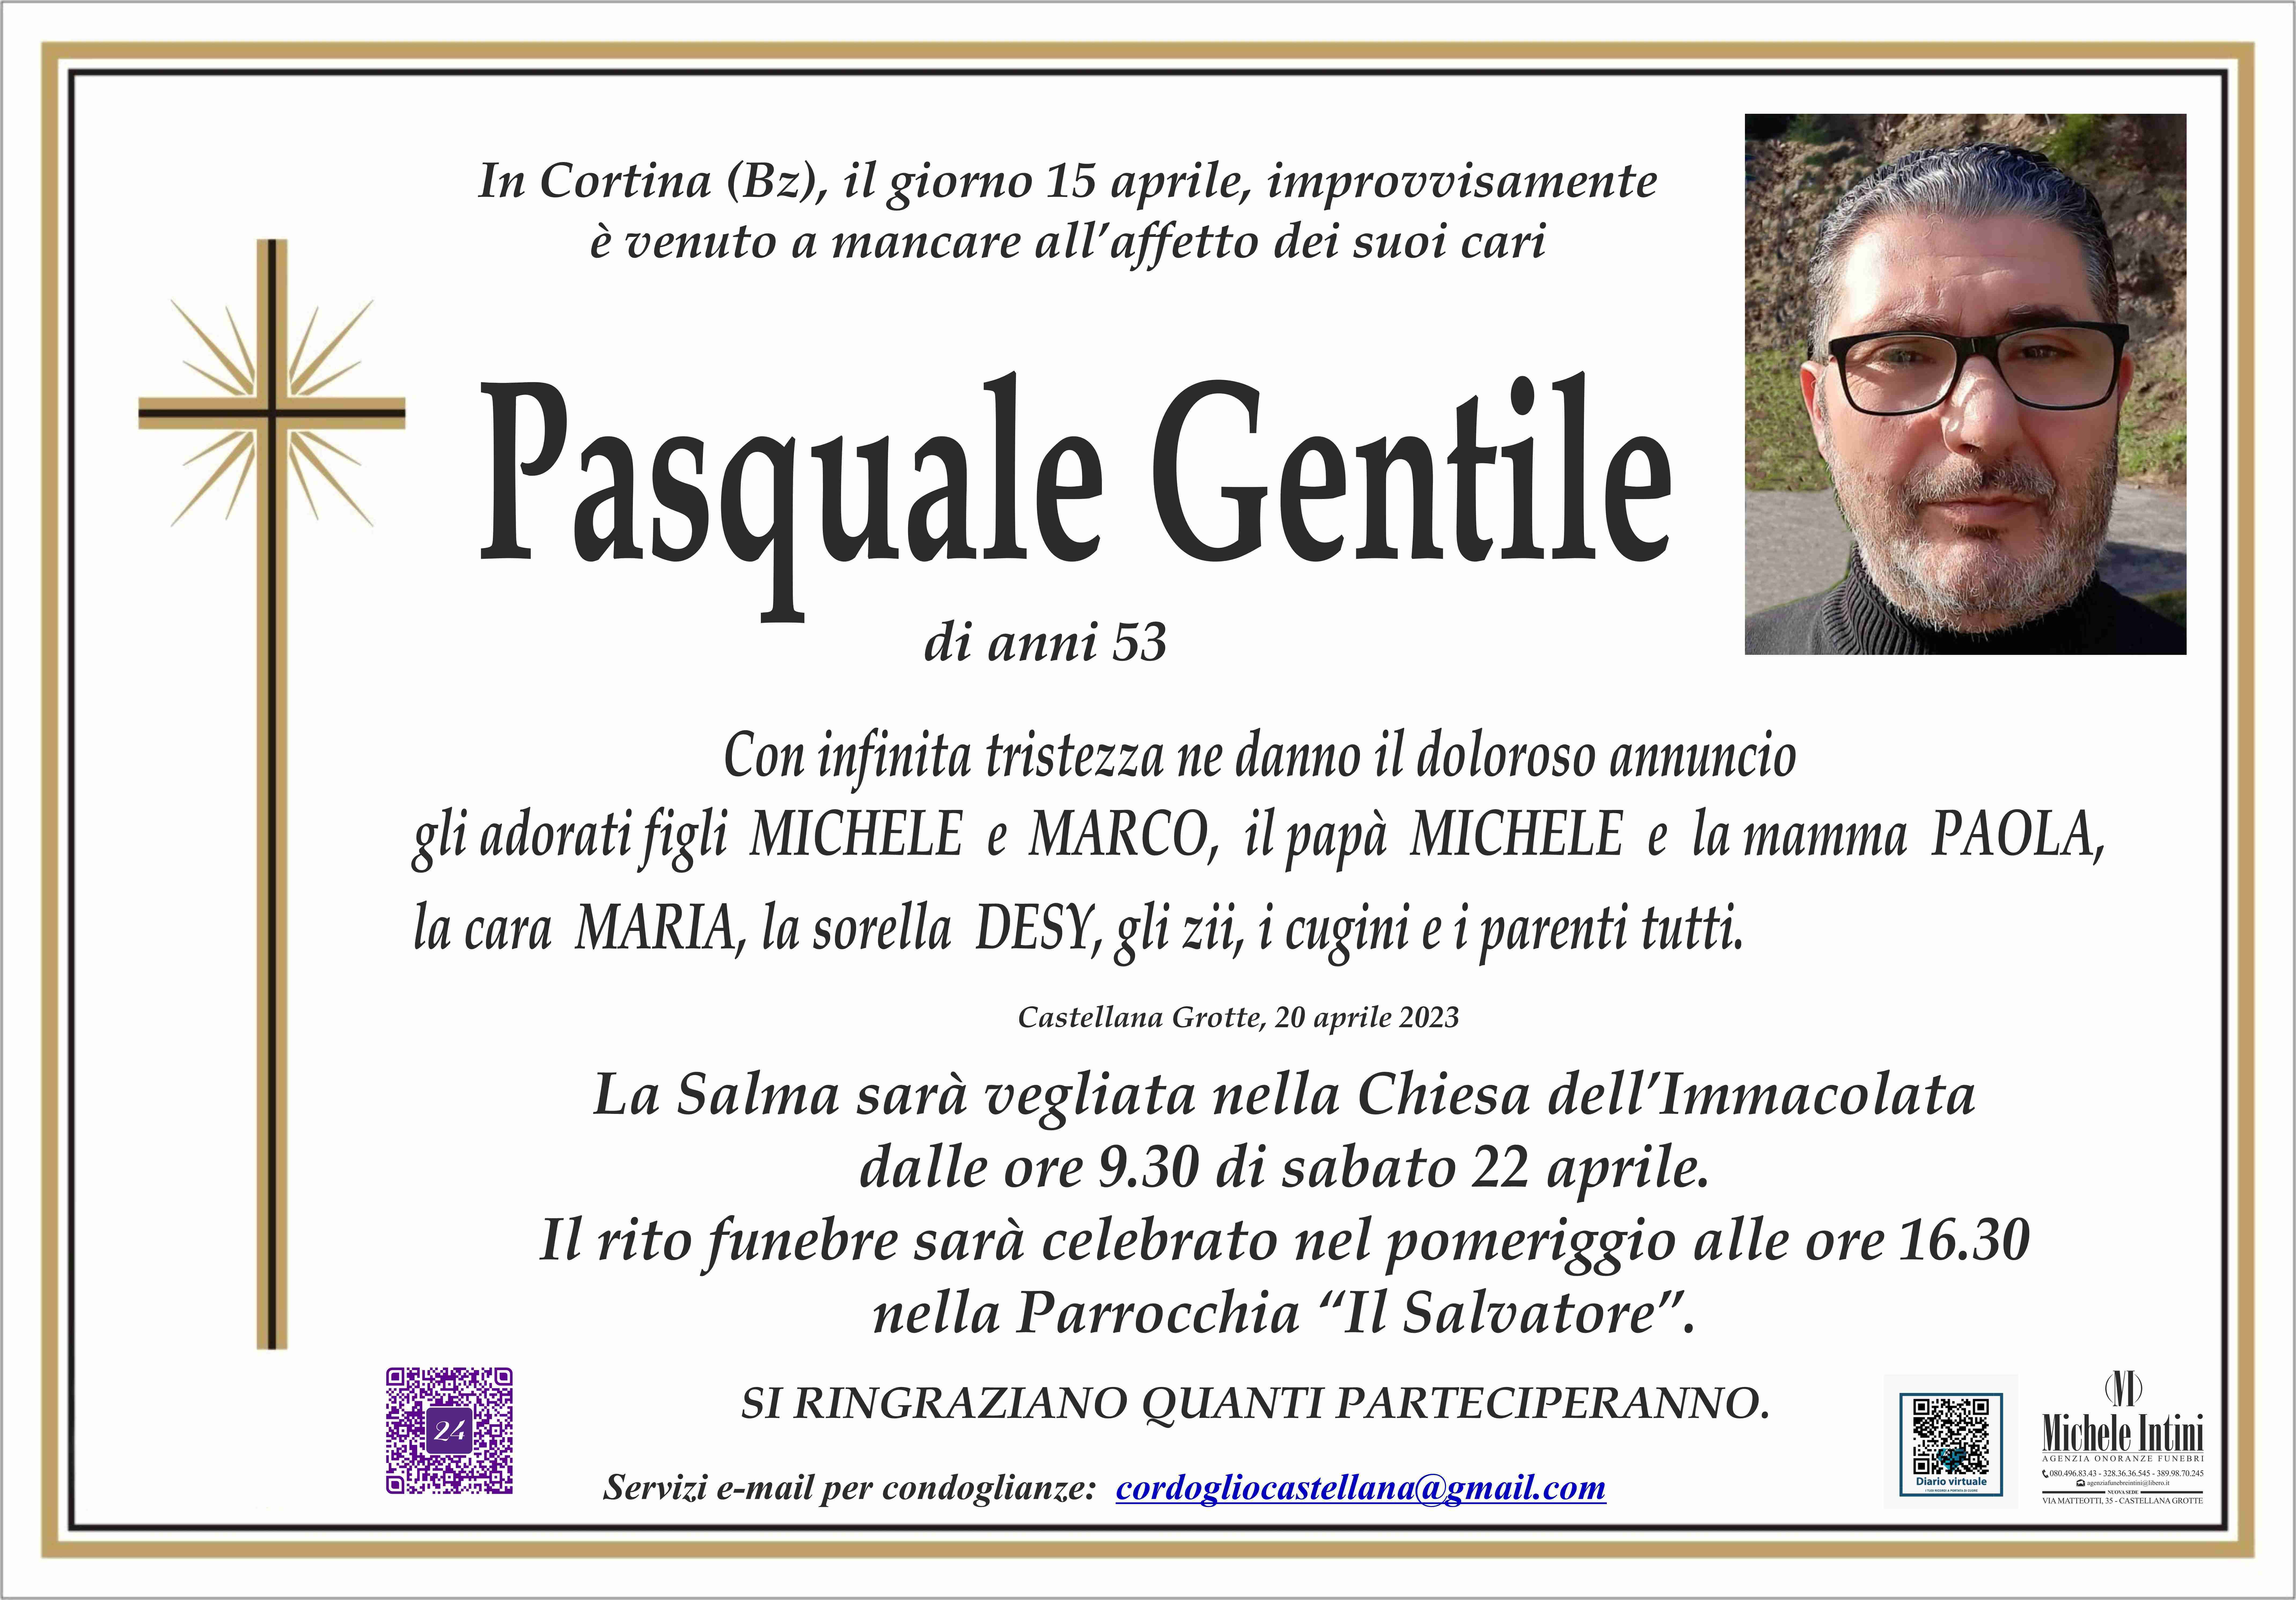 Pasquale Gentile